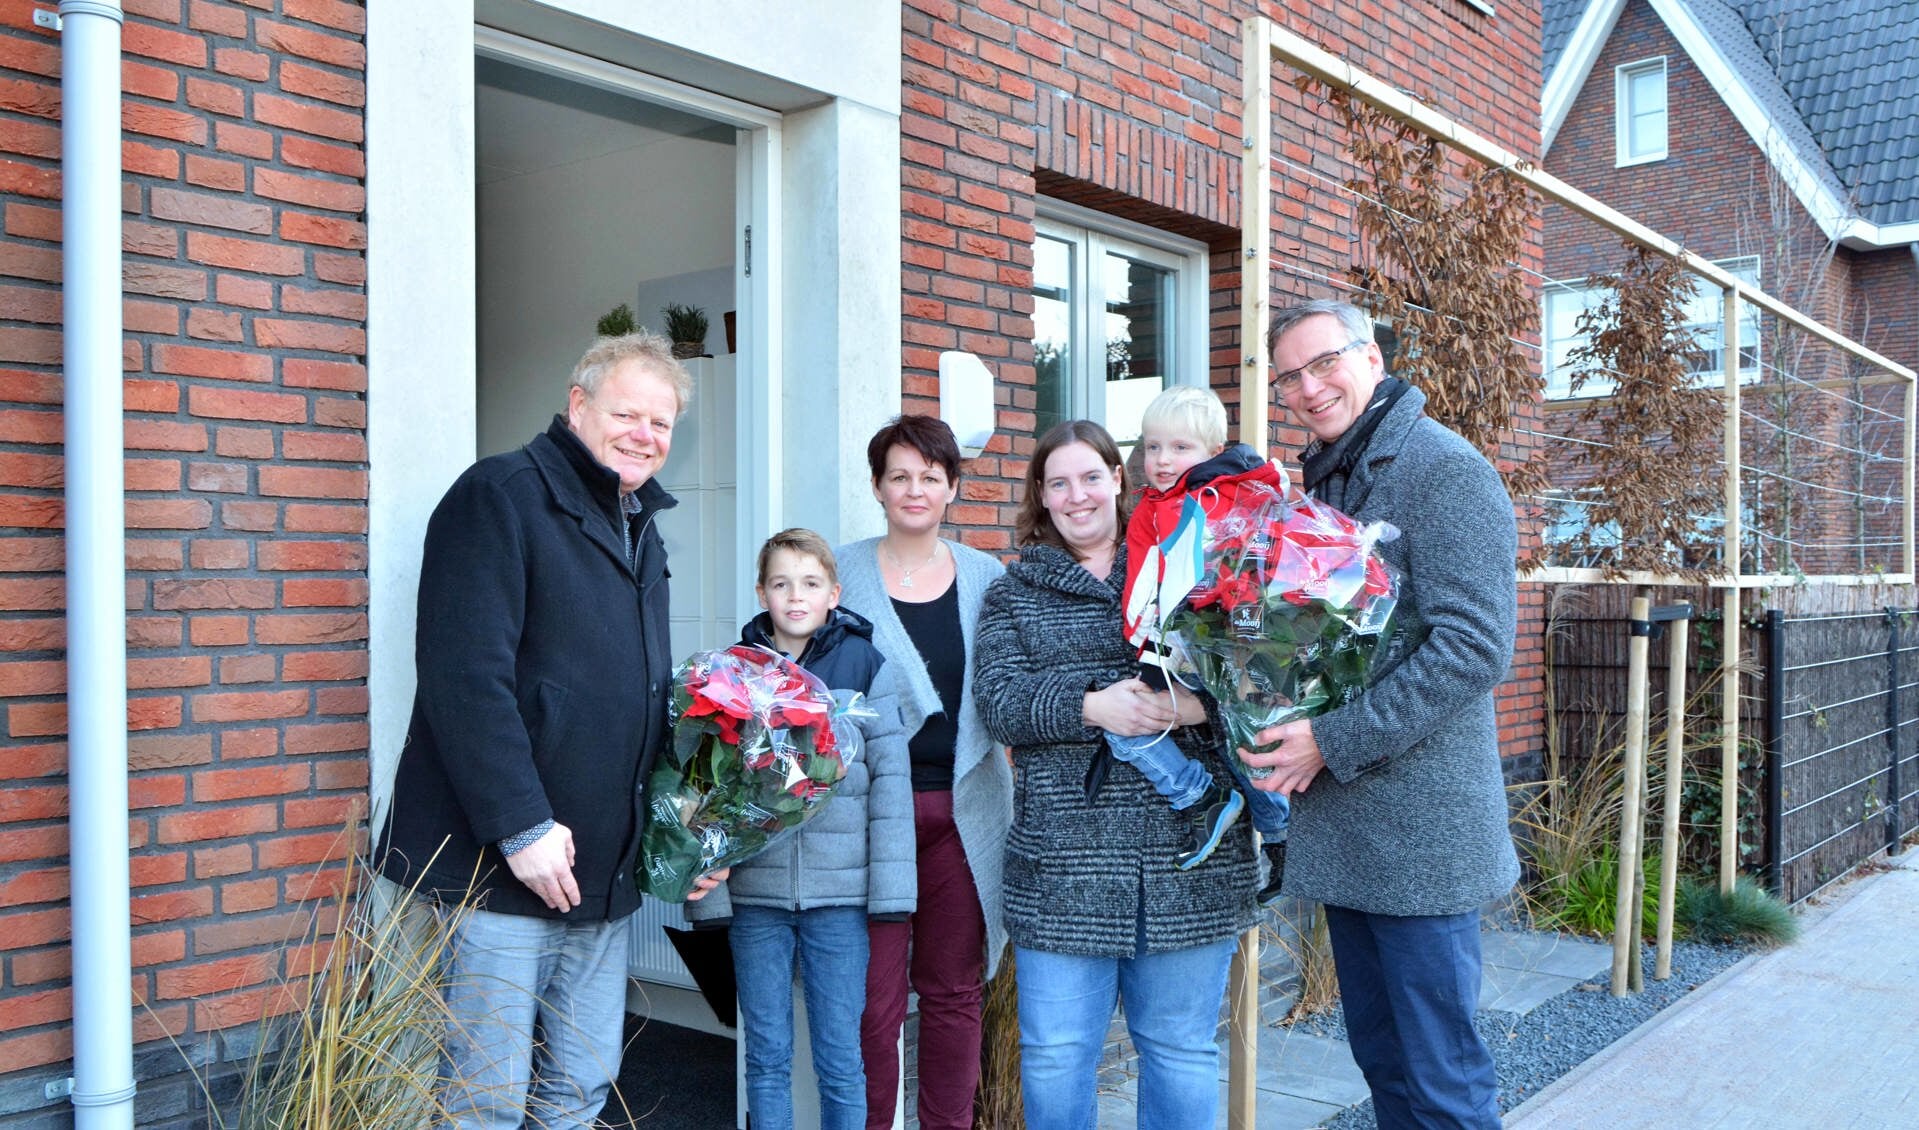 Wethouder Krijn van der Spijk, Sten, mevrouw Spierenburg, mevrouw De Boer met Jelle, projectleider Jaap Jonker.